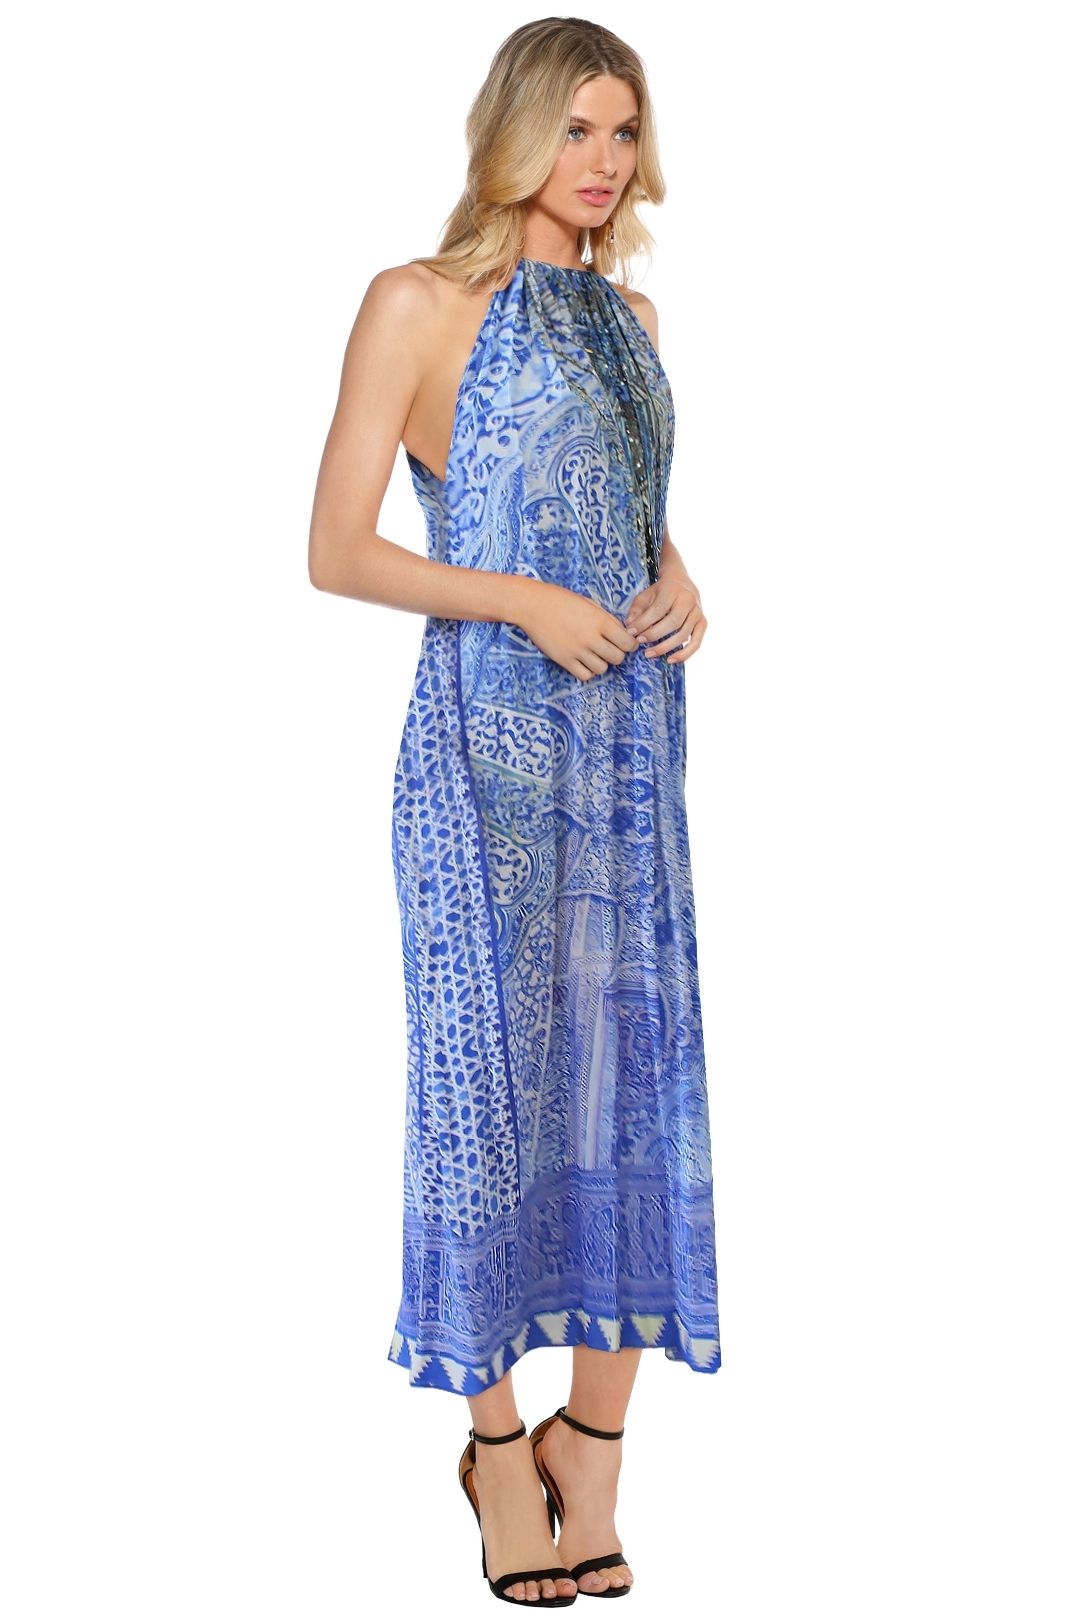 Bosphorous Drawstring Dress - Camilla for Rent | GlamCorner